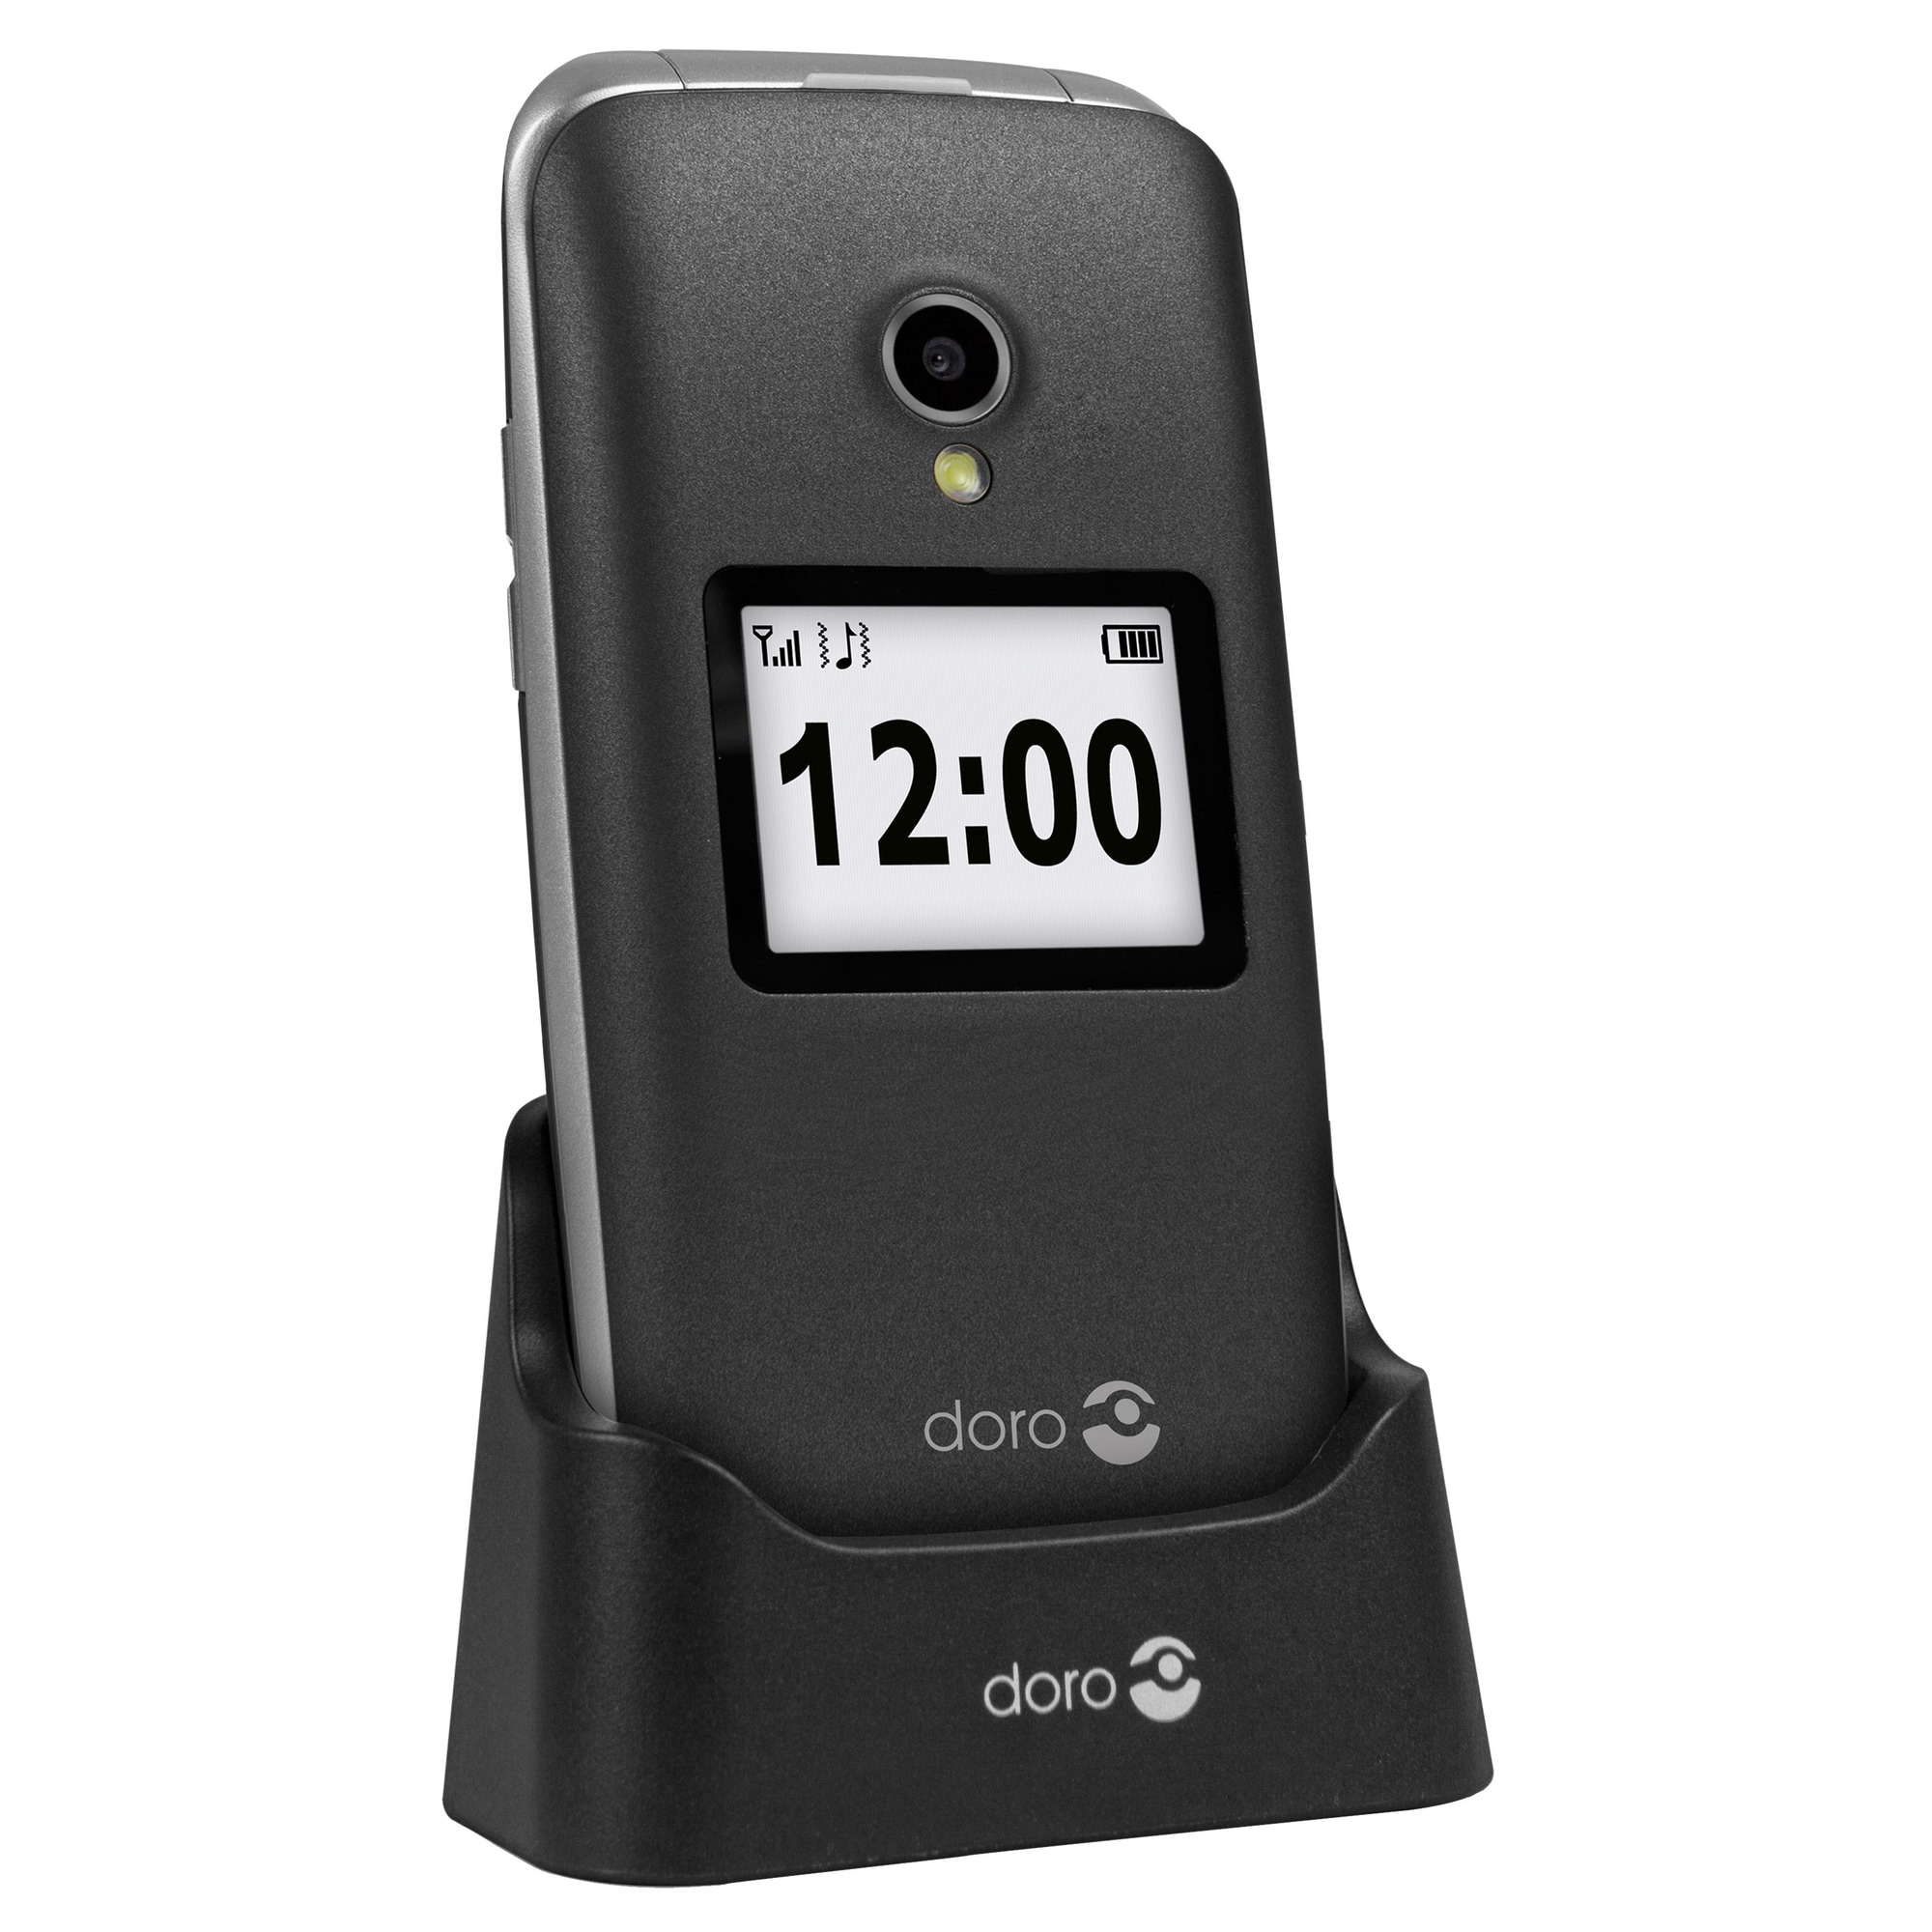 Doro 2424 matkapuhelin (harmaa) - Vain 2G - Gigantti verkkokauppa